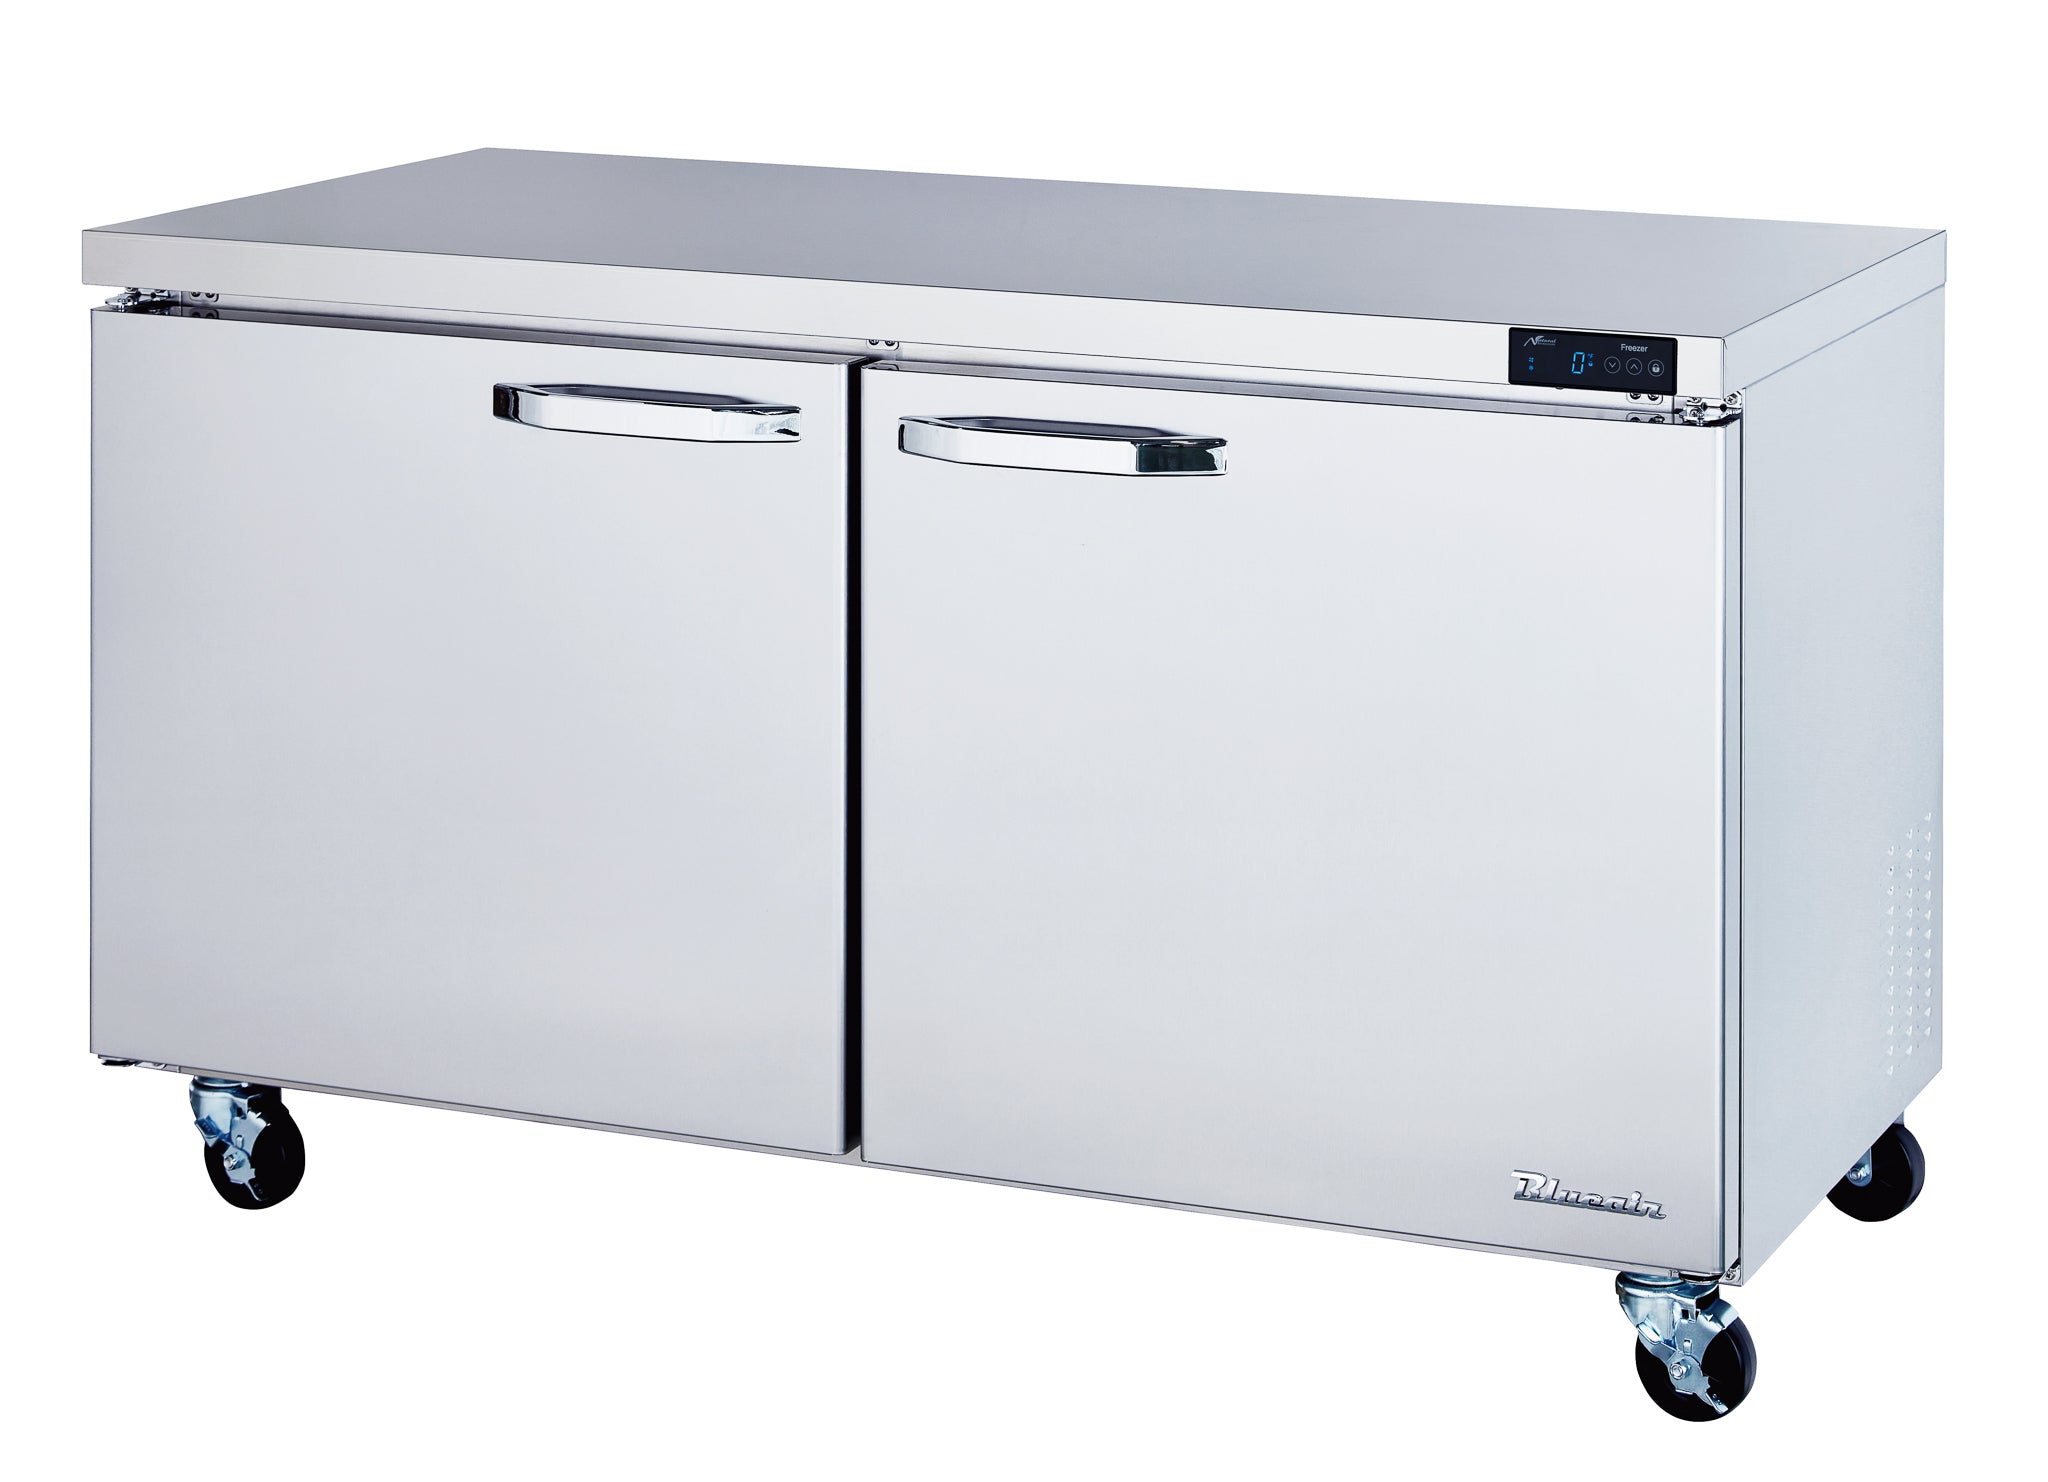 Blue Air - BLUF60-HC, 2 Doors All Stainless Undercounter Freezer - 60" wide, 16.5 cu/ft., R-290 Refrigerant